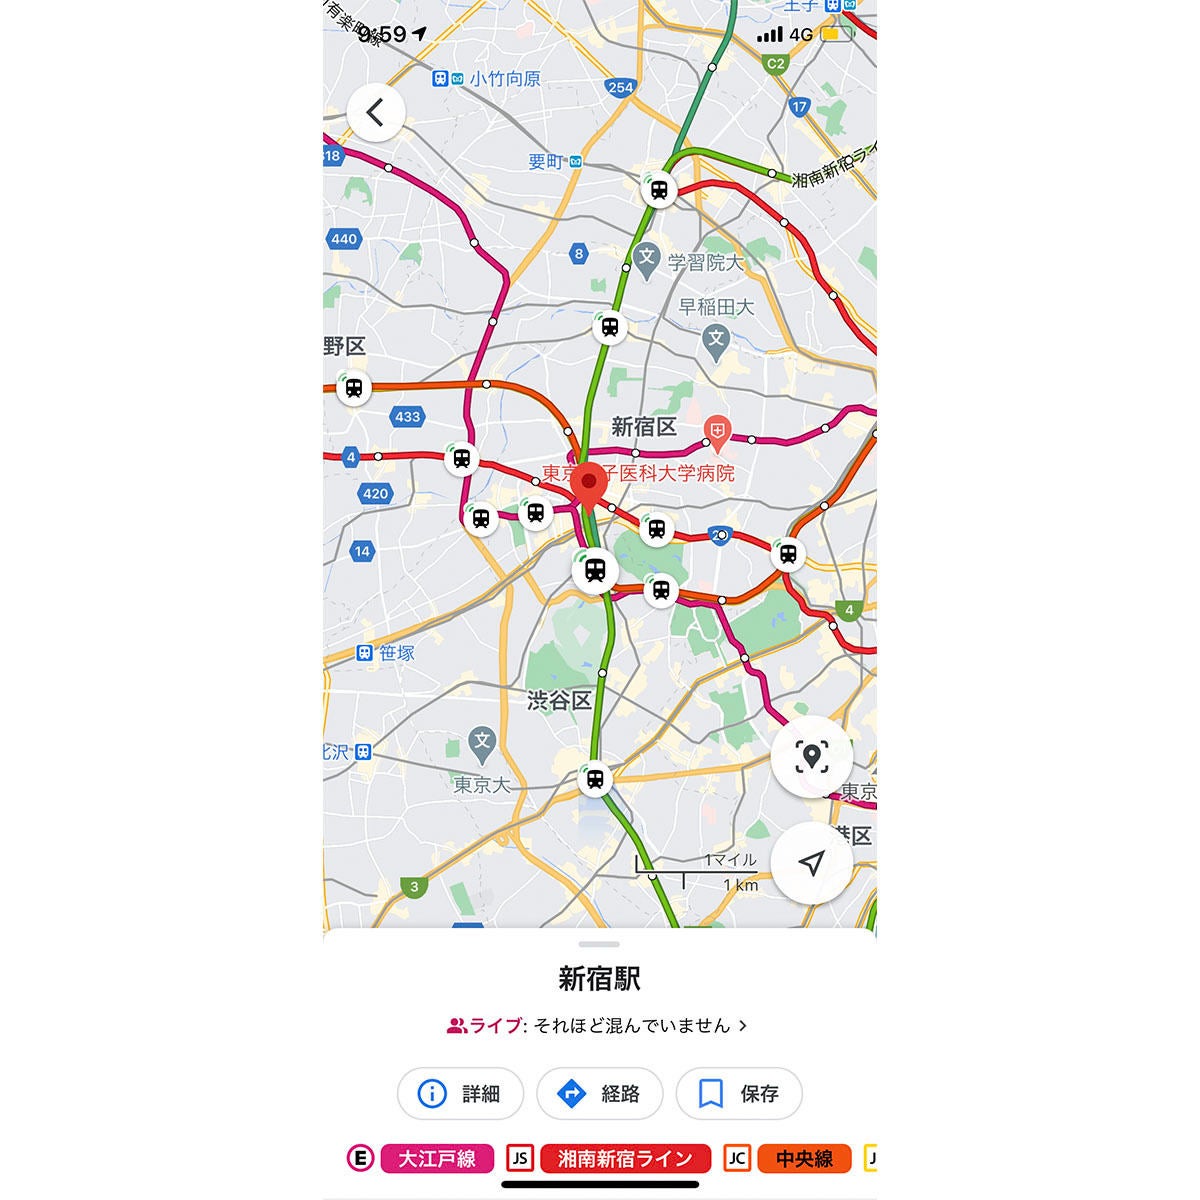 Google マップで Jr 東京メトロ 都営地下鉄の電車の現在地が分かるように マイナビニュース